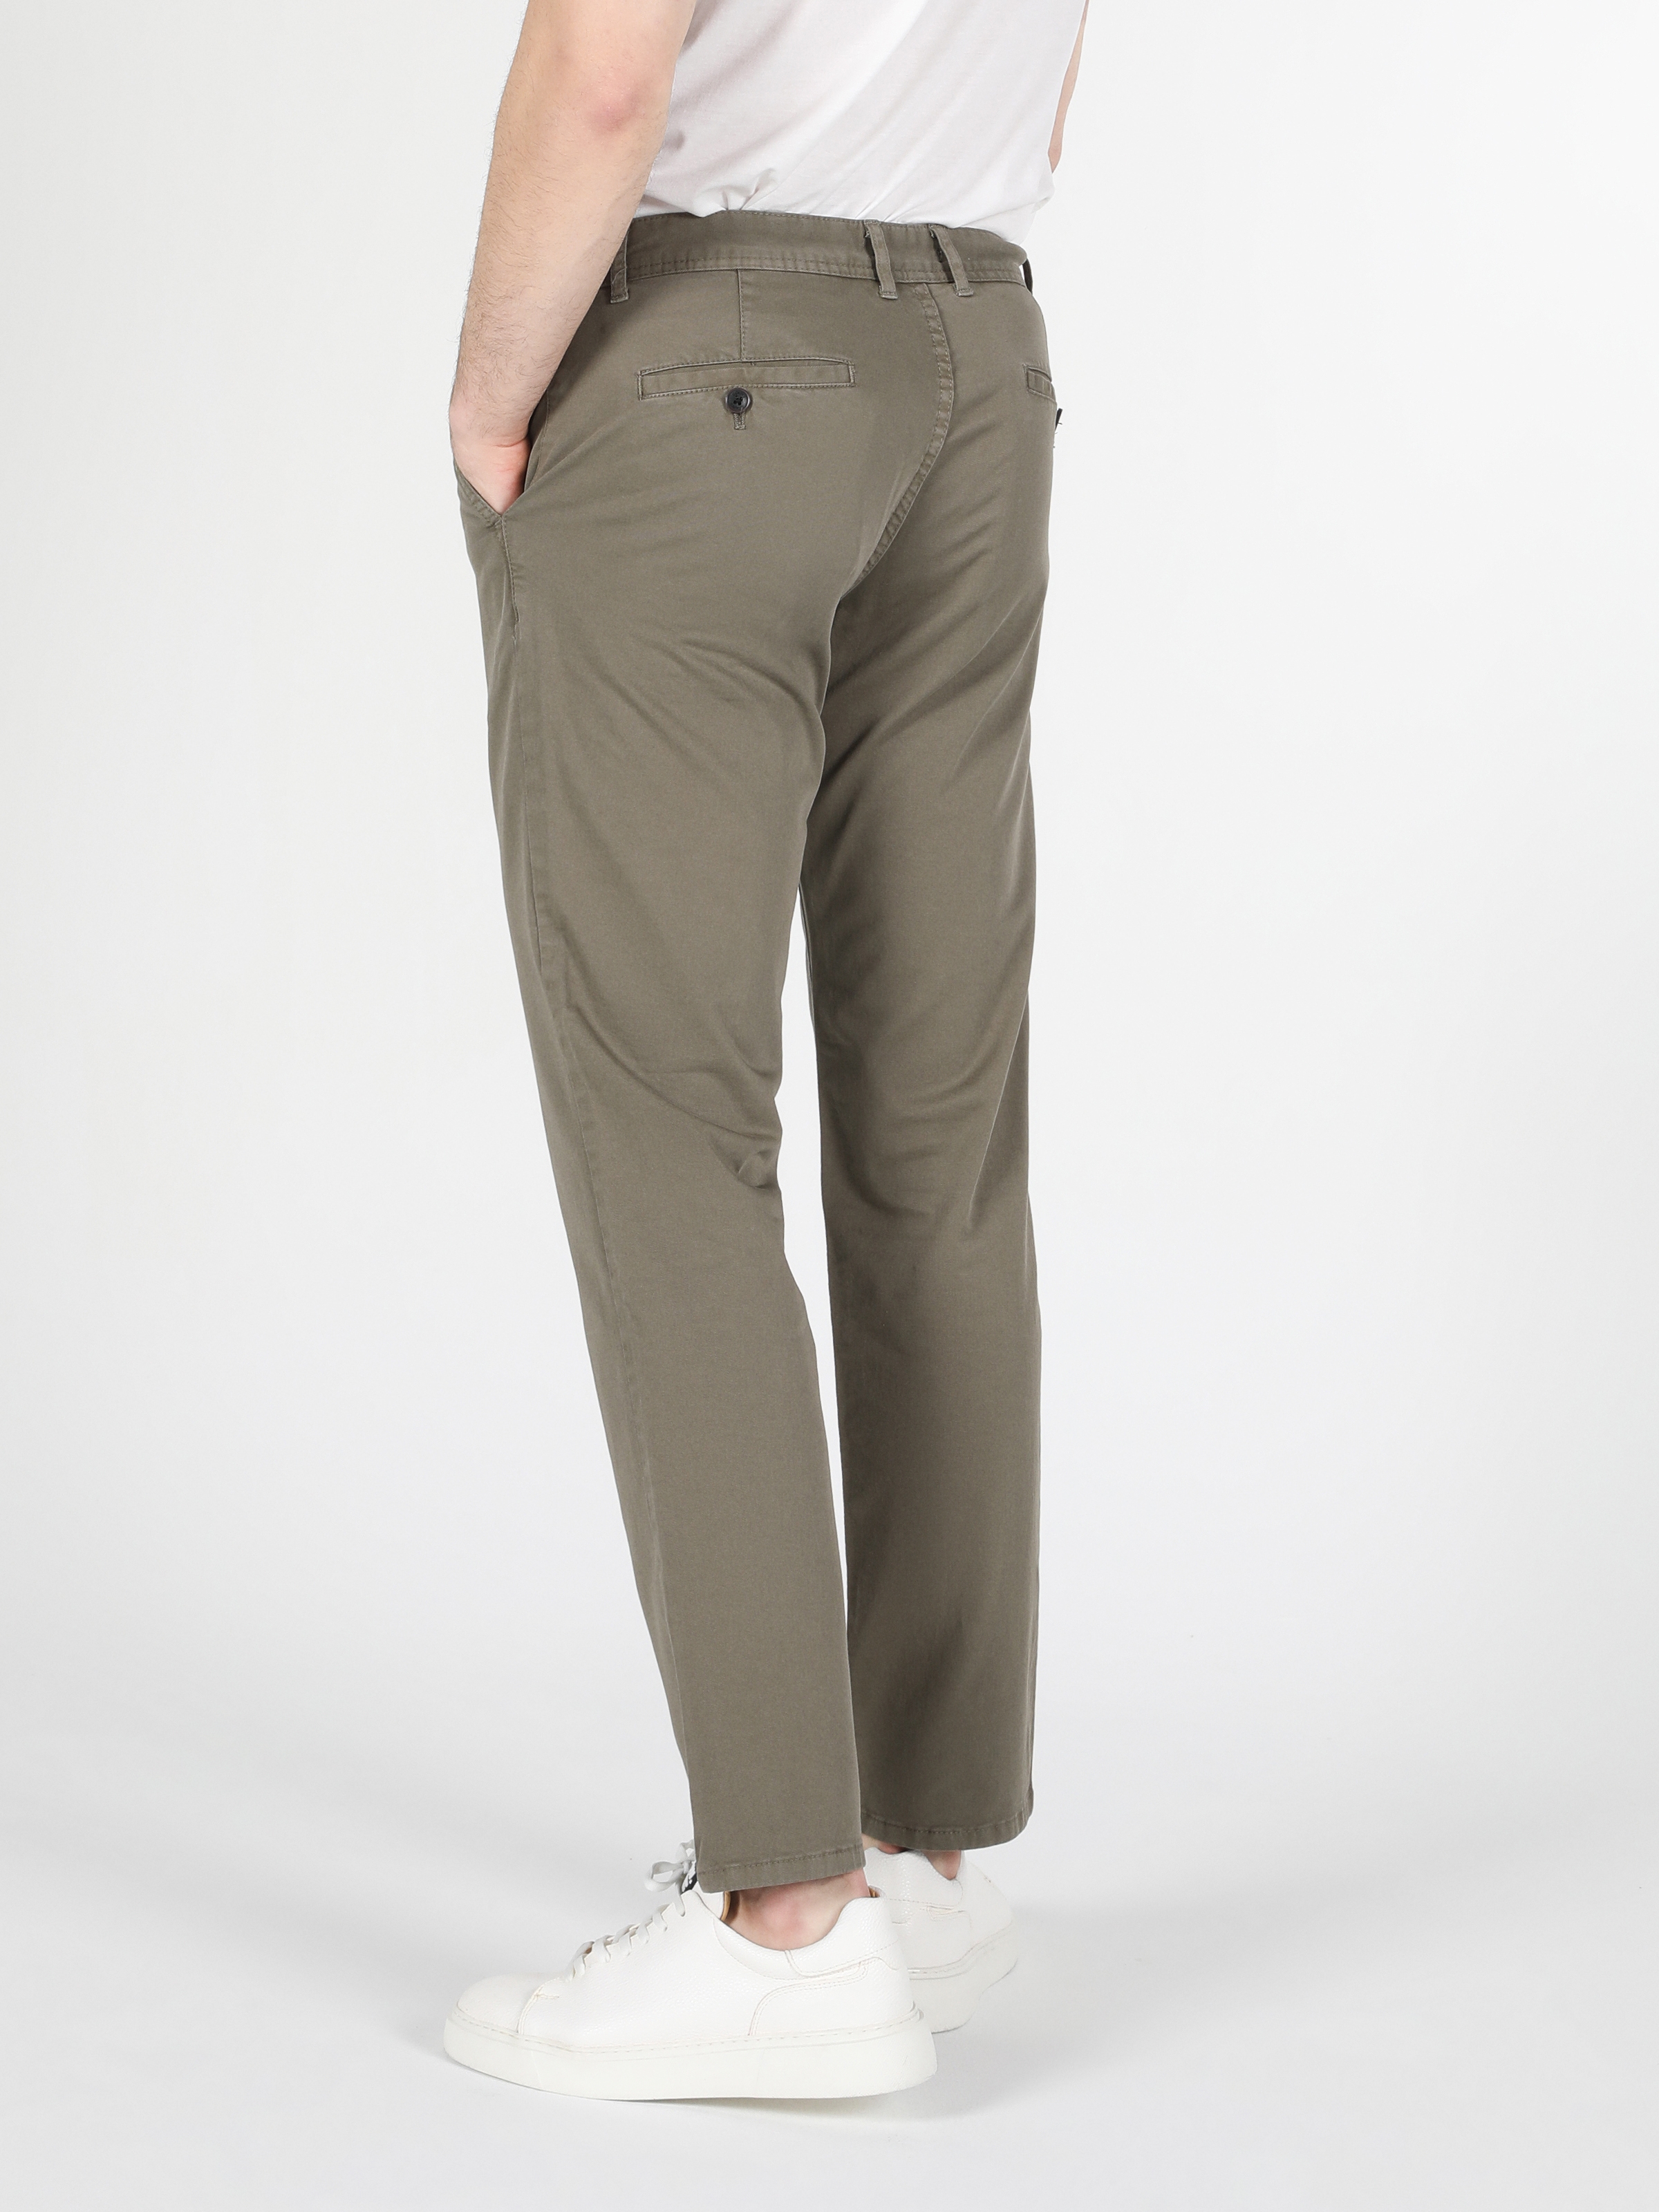 Afficher les détails de Pantalon Vert Essence Pour Homme, Coupe Régulière, Taille Moyenne, Jambe Droite